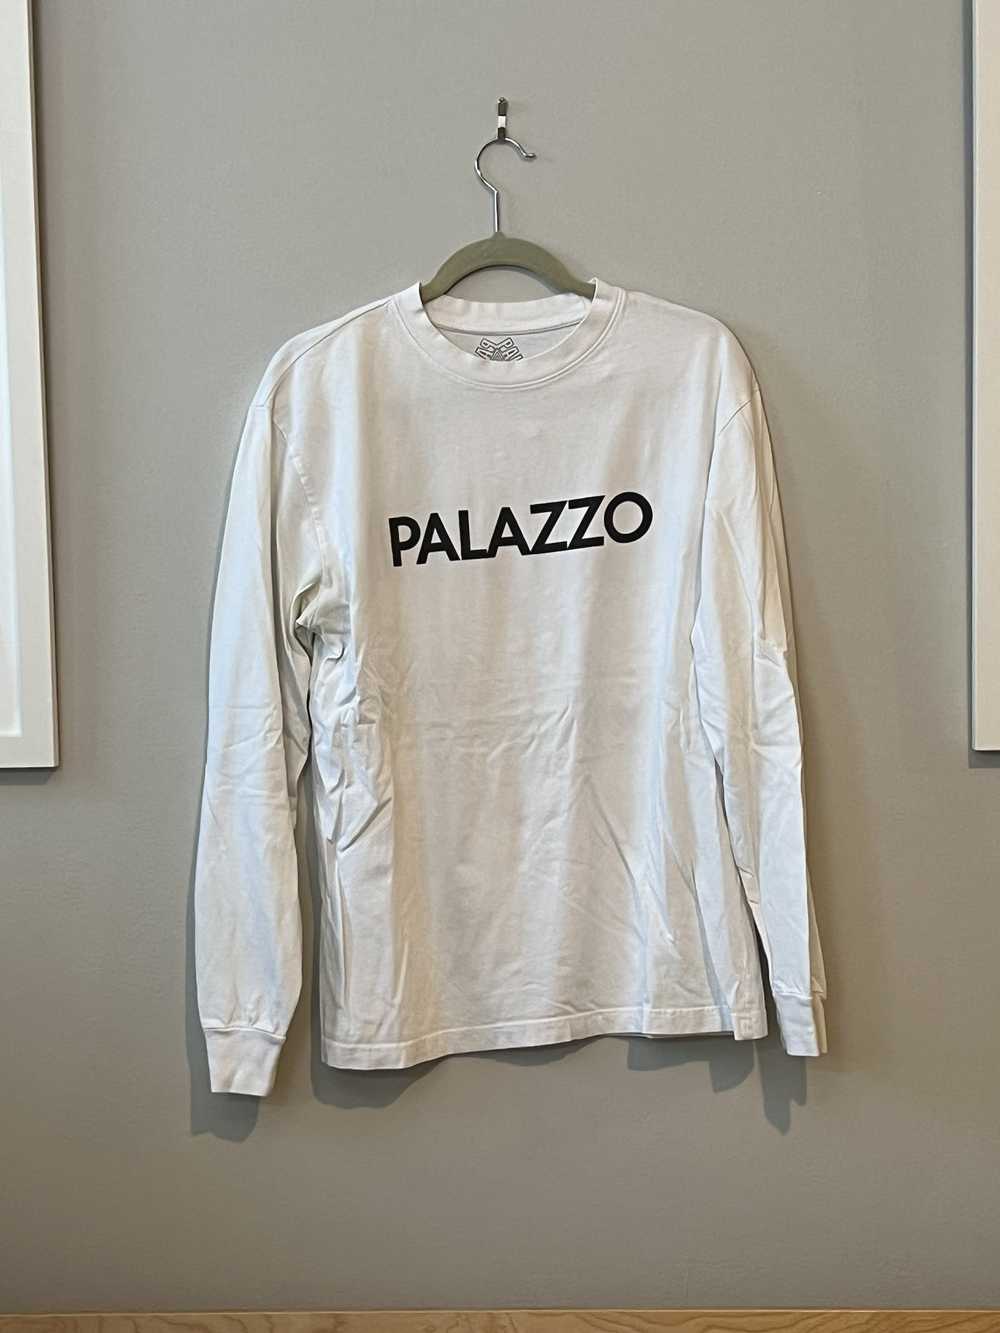 Palace Palazzo L/S T-shirt - image 2